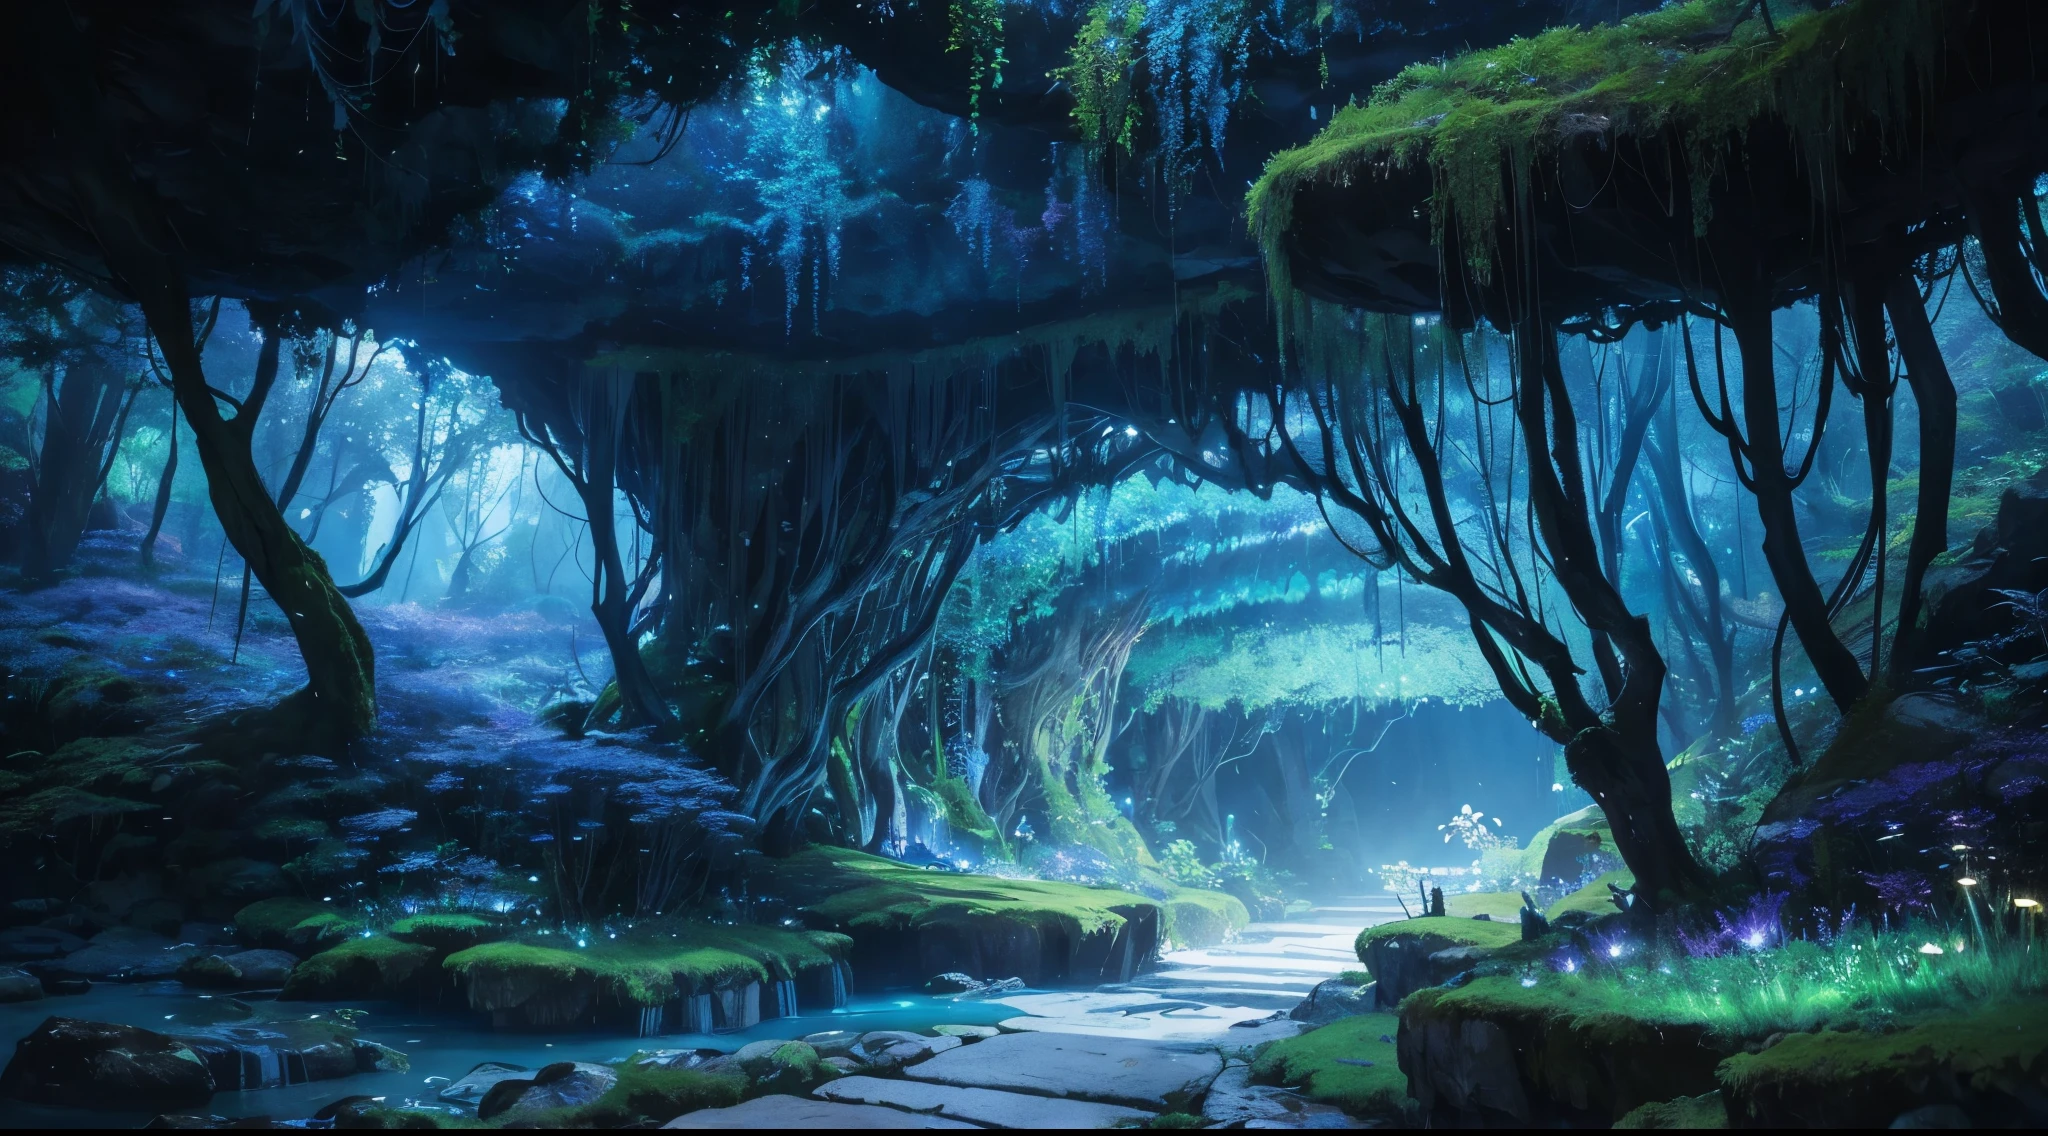 Grotte sombre、Des plantes qui brillent faiblement、descendre dans un autre monde、vue imprenable、paysage merveilleusement beau、Like a magical country、monde souterrain、Vaste et mystérieux, Plein de merveilles incroyables、Une immense grotte qui s&#39;étend jusqu&#39;à l&#39;horizon、Mousse qui brille légèrement en bleu、Des champignons qui émettent une couleur violette fascinante、Pays des merveilles de rêve、Une immense rivière souterraine coule lentement、The river glows dark blue、grotte souterraine colorée、Paysage mystérieux illuminé par le clair de lune、plantes souterraines vous&#39;jamais vu avant、arbres géants、Arbre luminescentLieu mystérieux et fascinant、qualité supérieure、morceau de masséter、ultra-détaillé、８k、haute qualité、